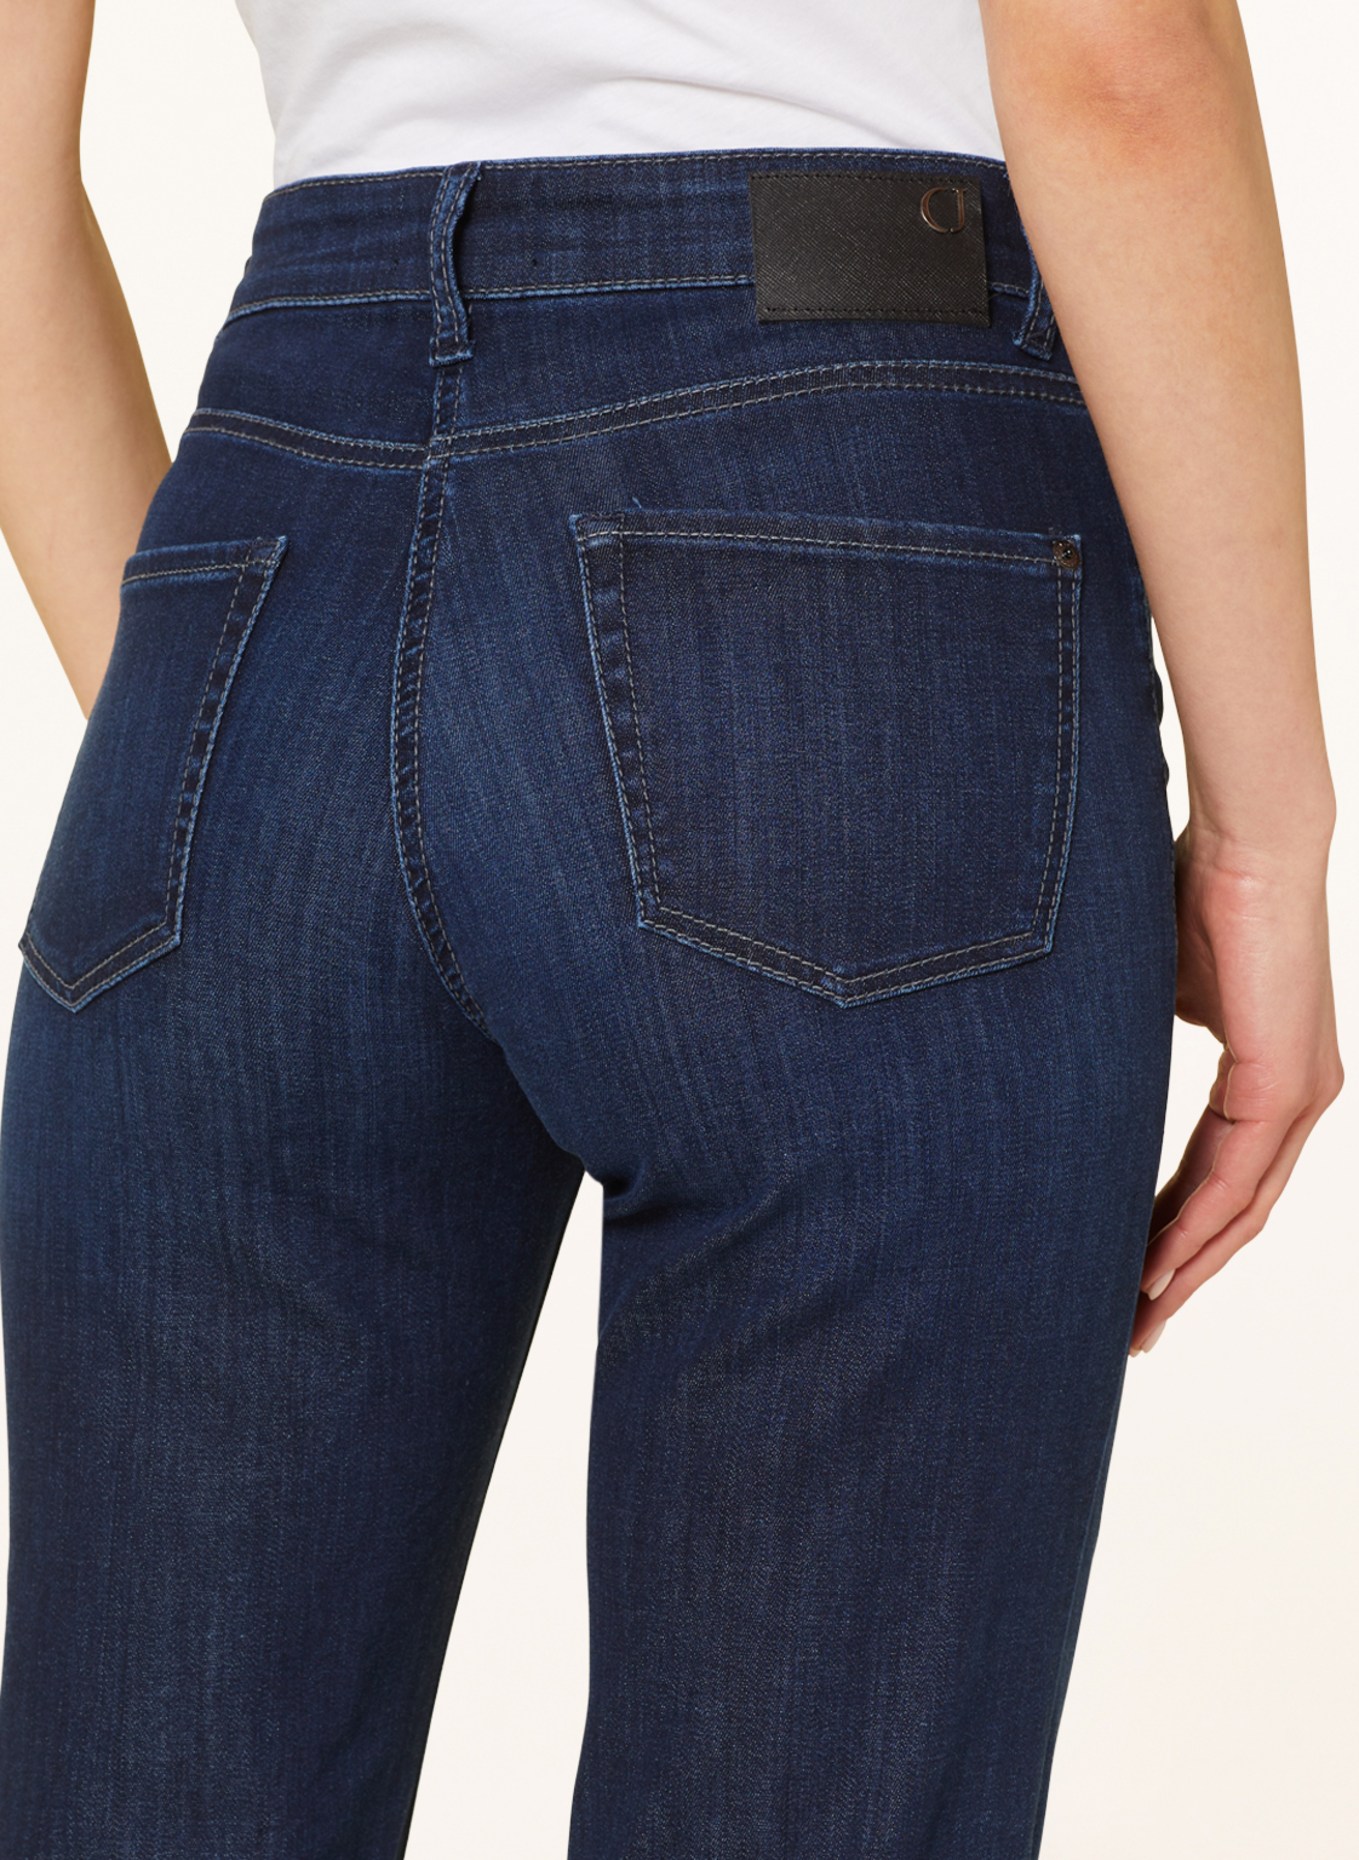 CAMBIO Straight jeans PARIS, Color: 5158 westcoast dark used (Image 5)